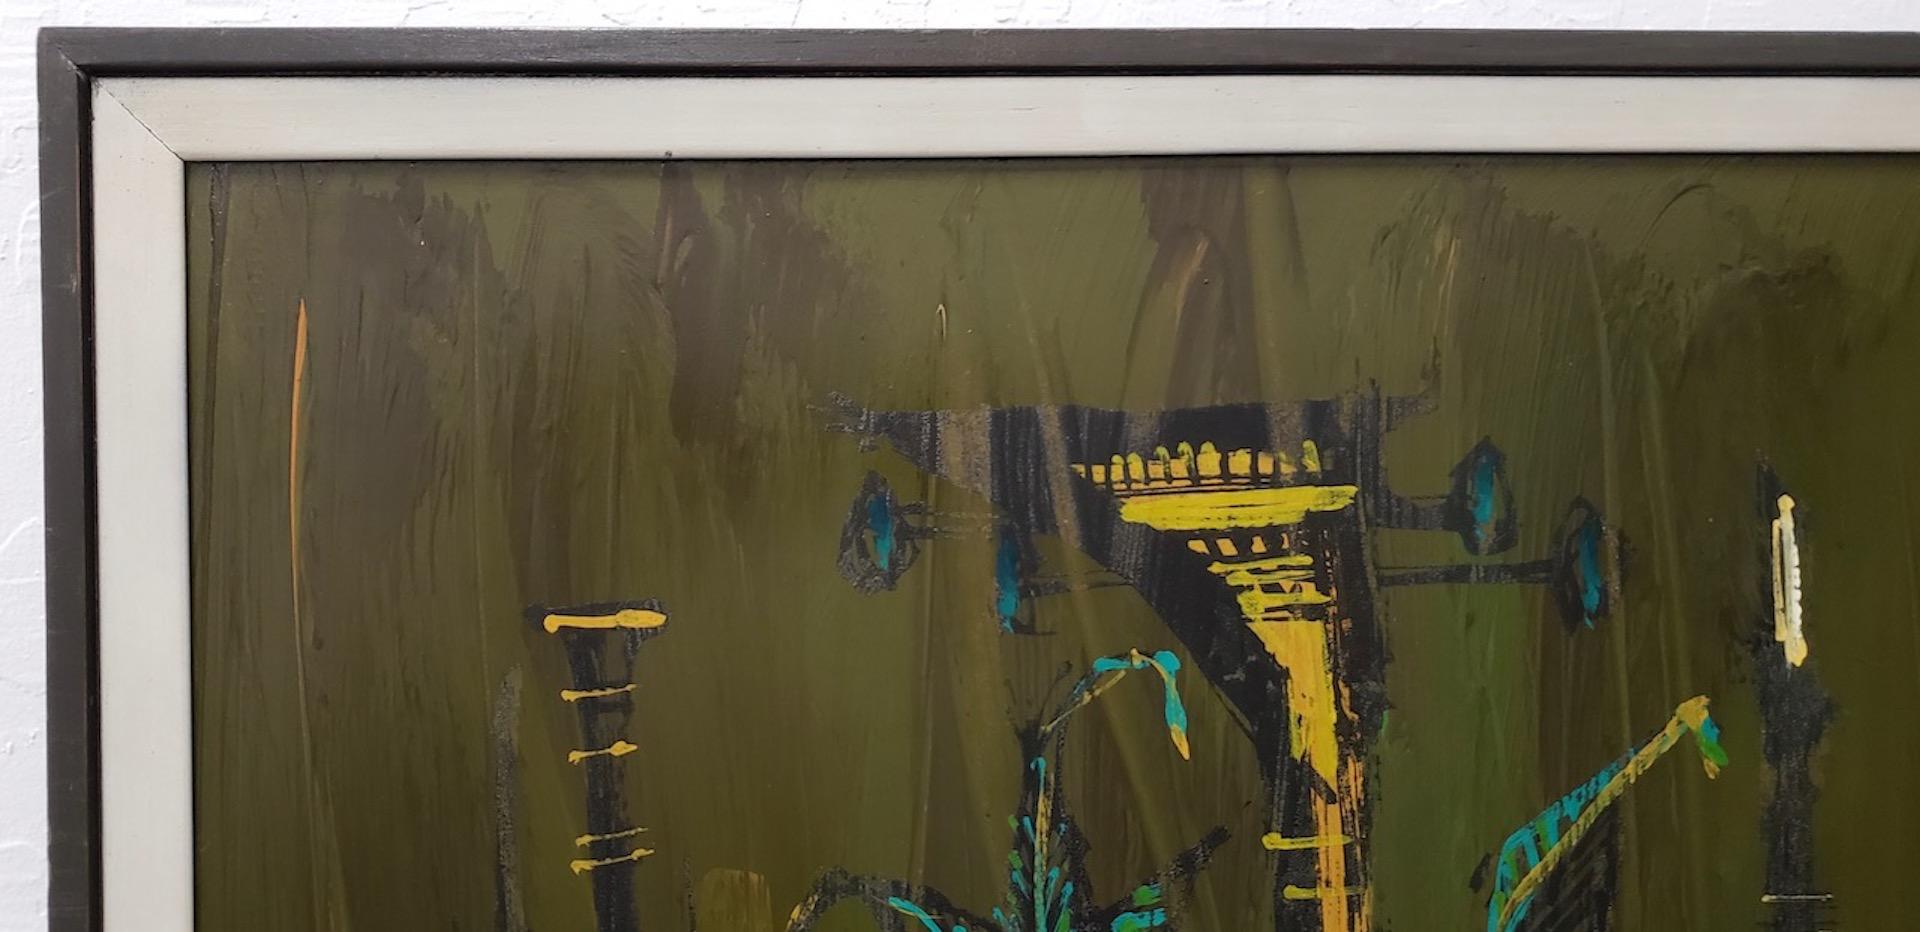 Grande peinture acrylique du milieu du 20ème siècle par Vanguard Studios signée Van Gaard

Peinture acrylique classique des années 1950 à 1960 représentant une guitare sur un fond abstrait coloré.

Les œuvres des Vanguard Studios sont souvent